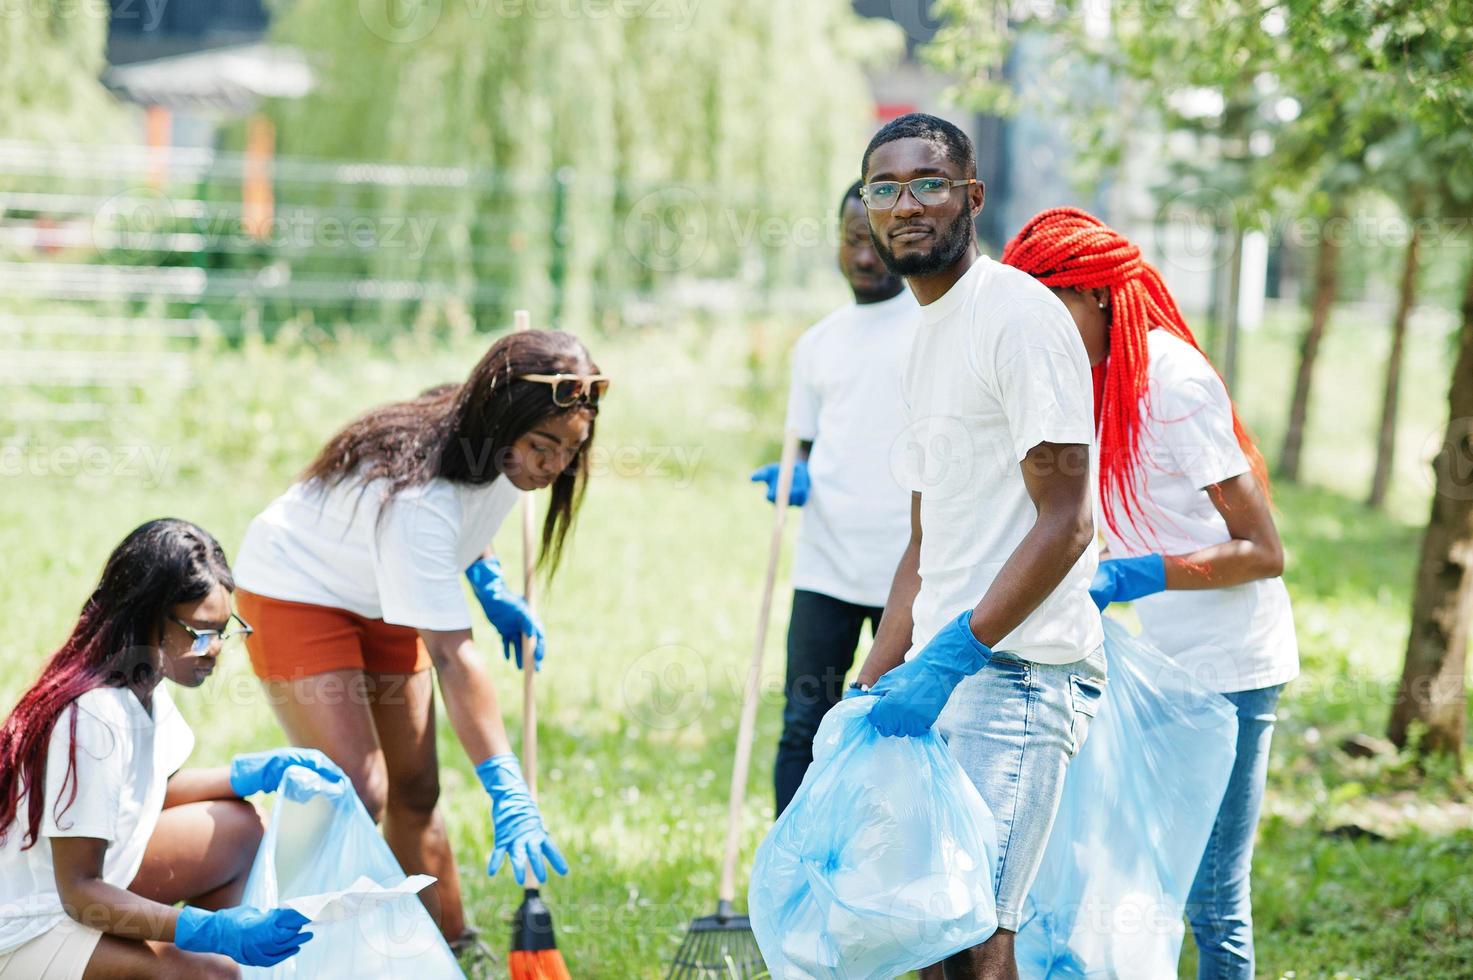 grupo de voluntarios africanos felices con área de limpieza de bolsas de basura en el parque. Concepto de voluntariado, caridad, personas y ecología de África. foto